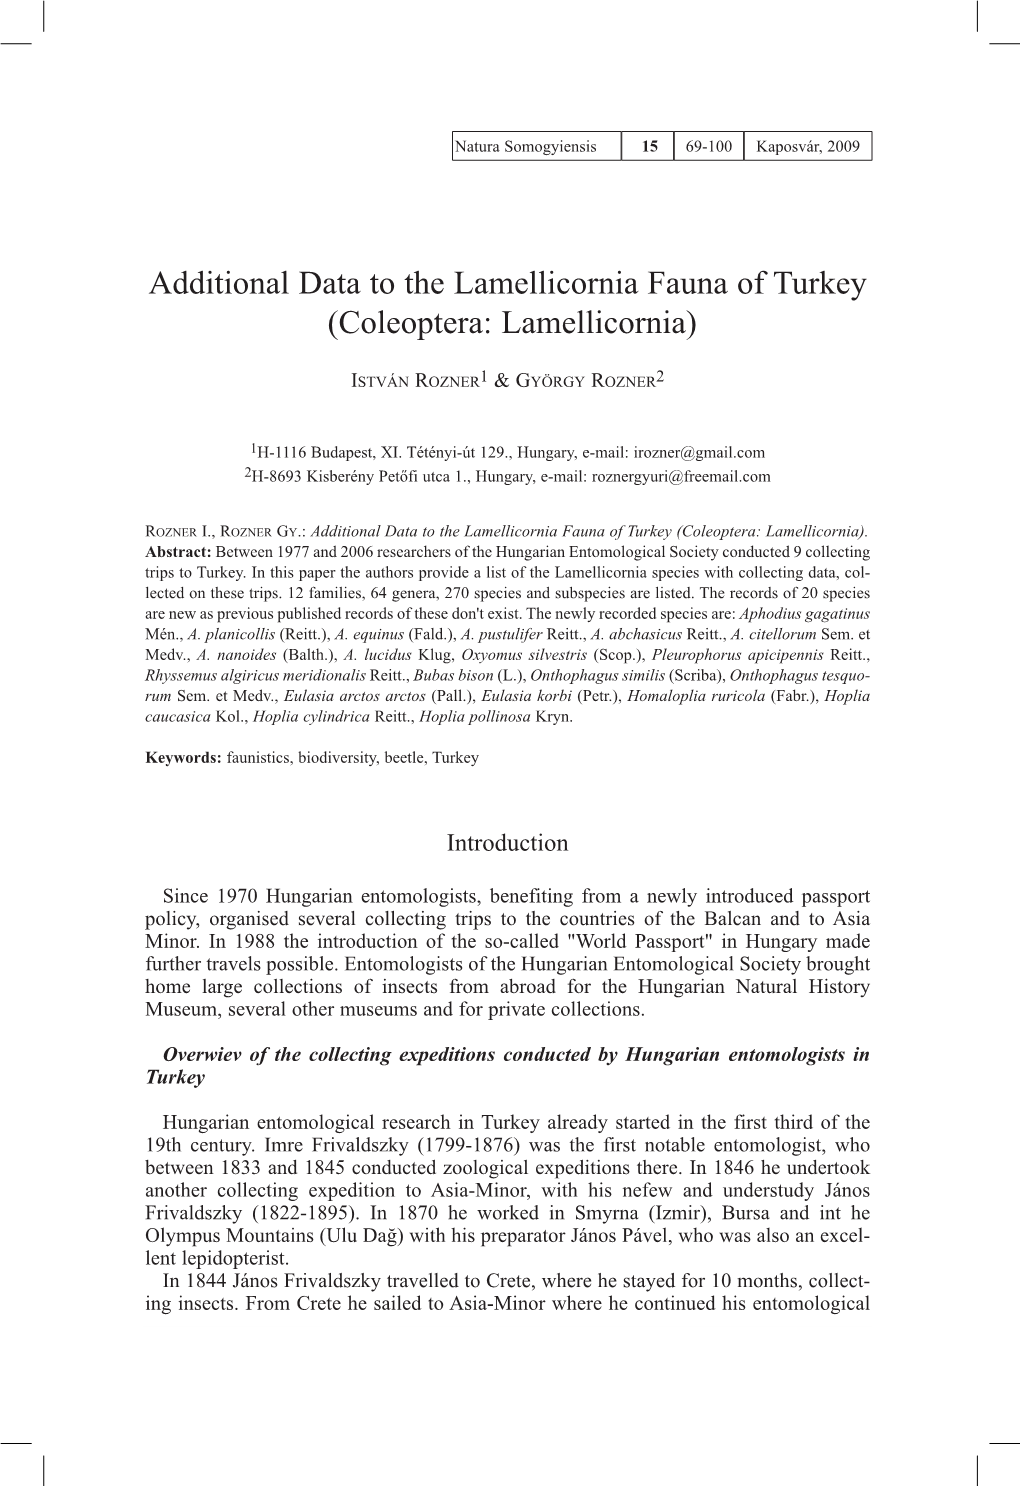 Additional Data to the Lamellicornia Fauna of Turkey (Coleoptera: Lamellicornia)